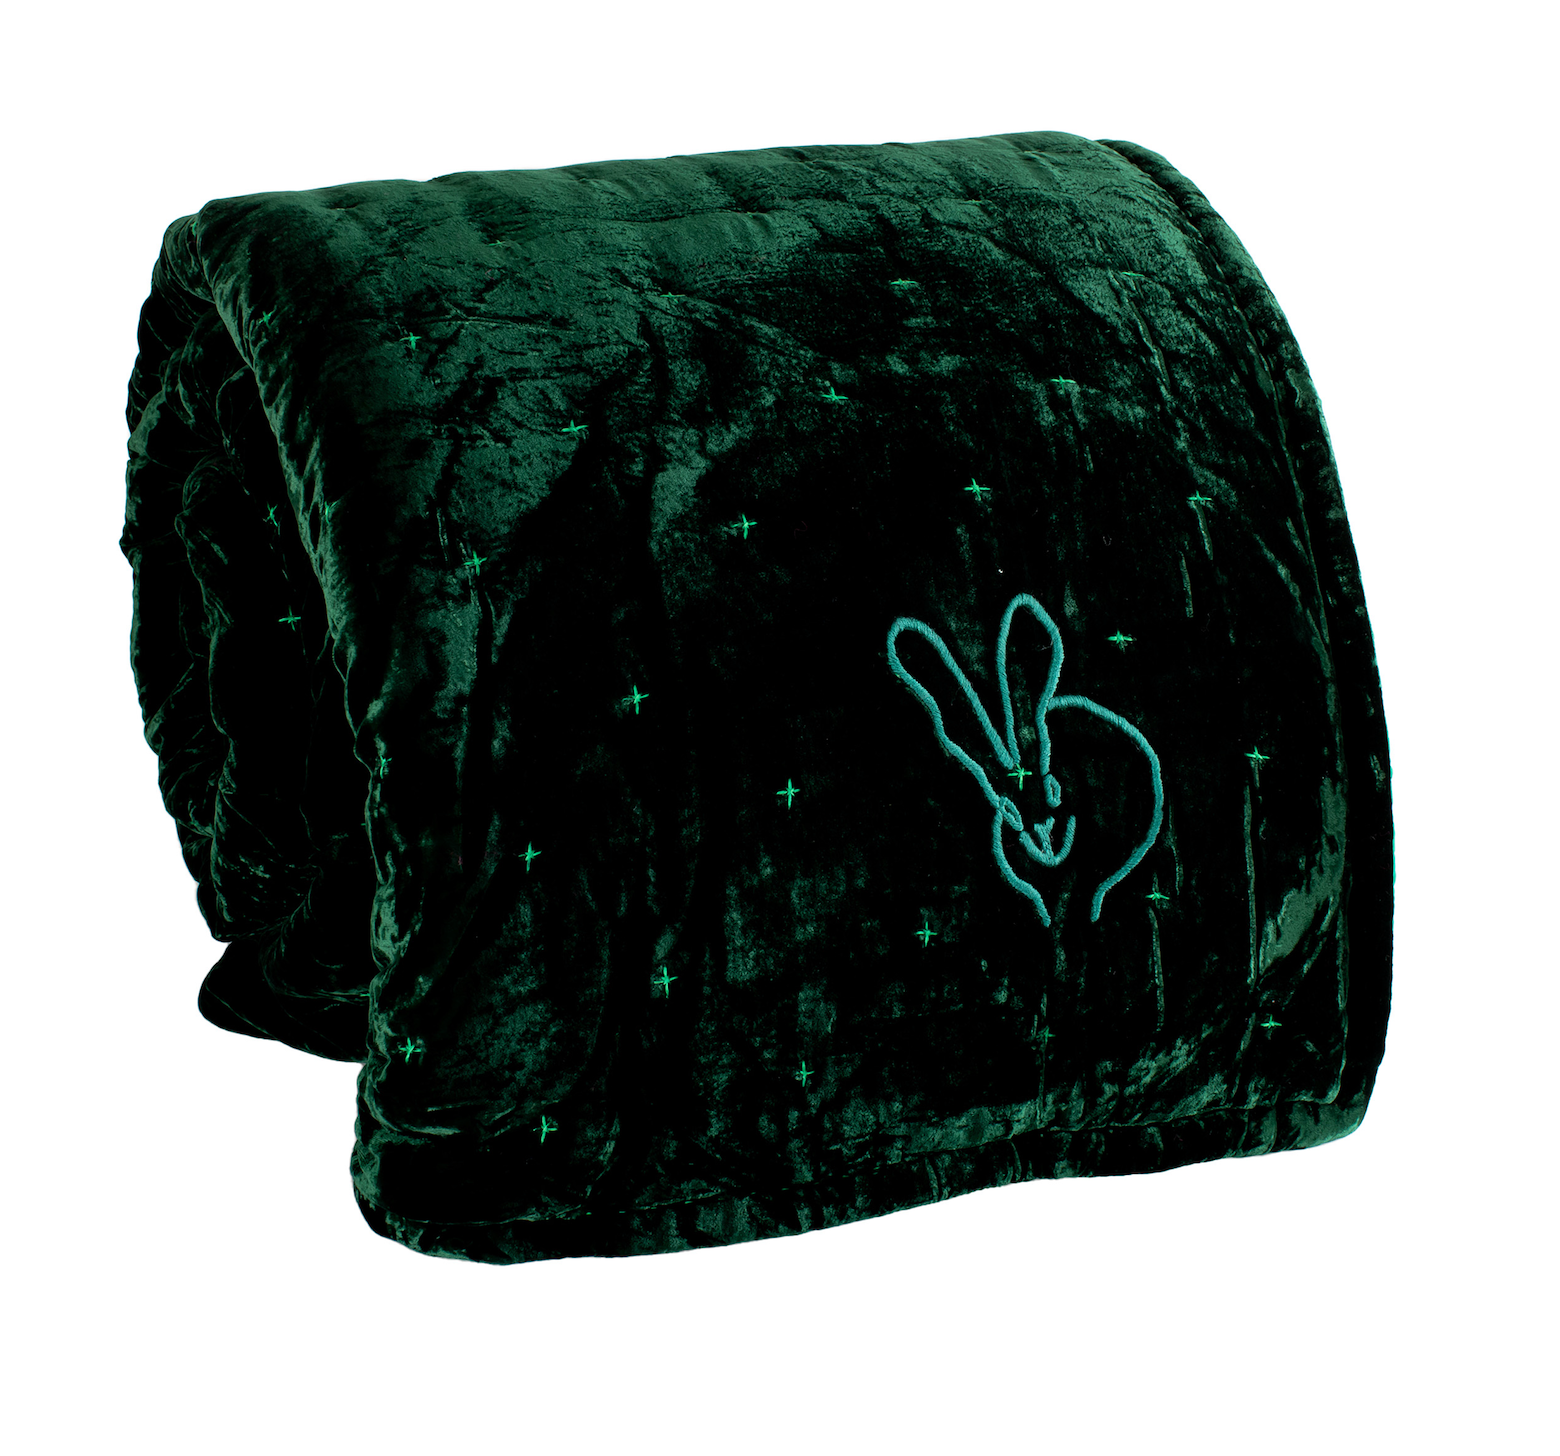 Hand-Embroidered Silk & Velvet Bunny Blanket, Emerald Green